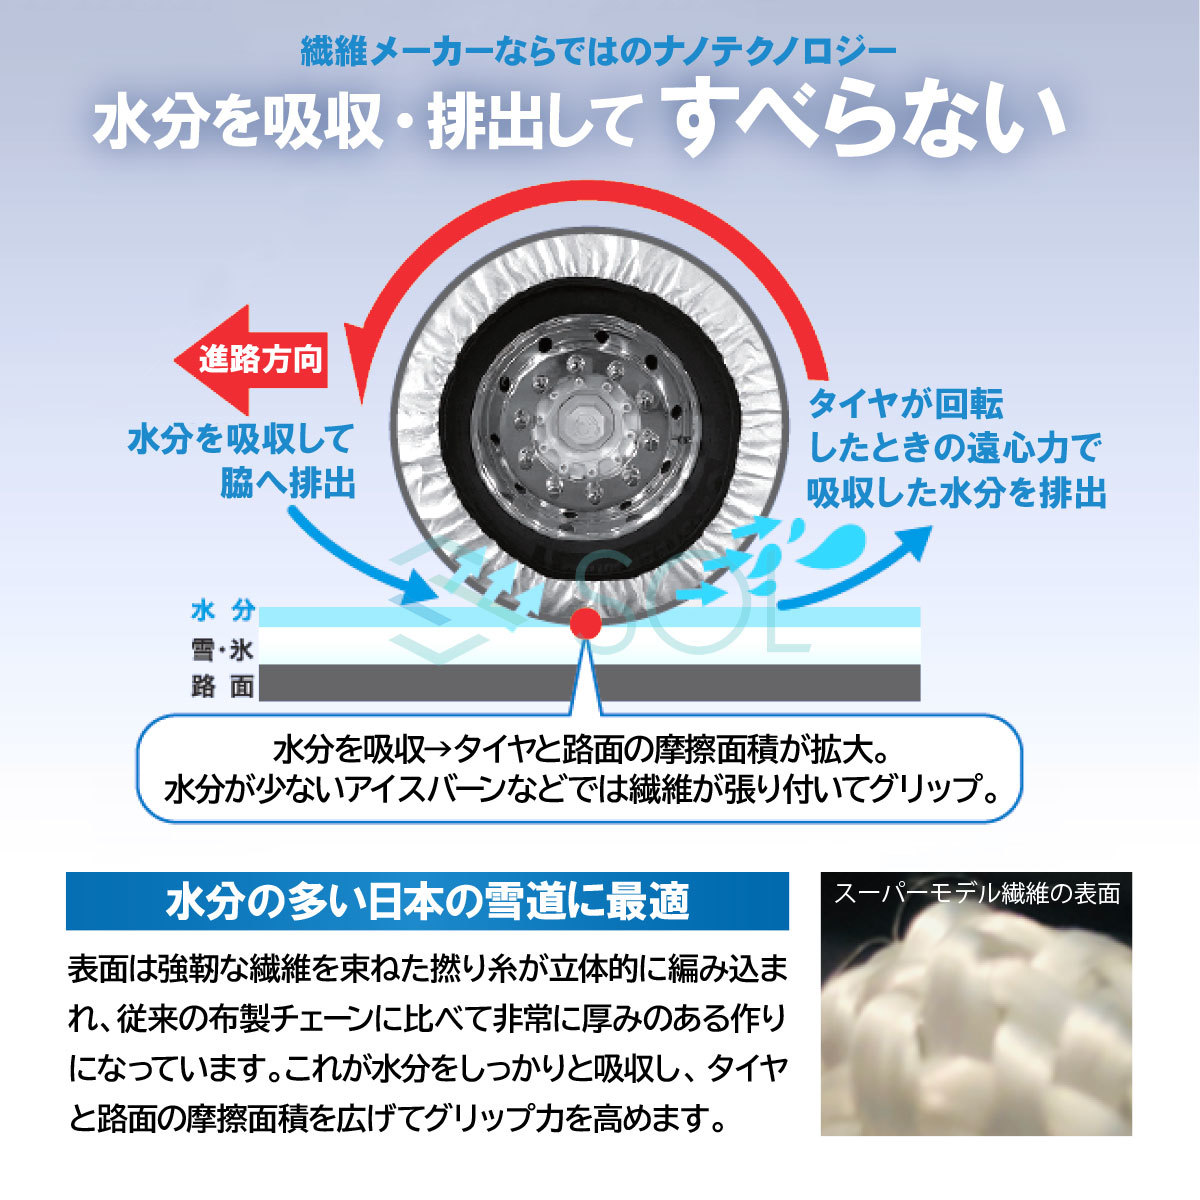 ISSE 日本正規代理店 特許取得 イッセ スノーソックス 滑らない タイヤチェーン サイズ74 ランドクルーザー パジェロ ベンツGクラス_画像3